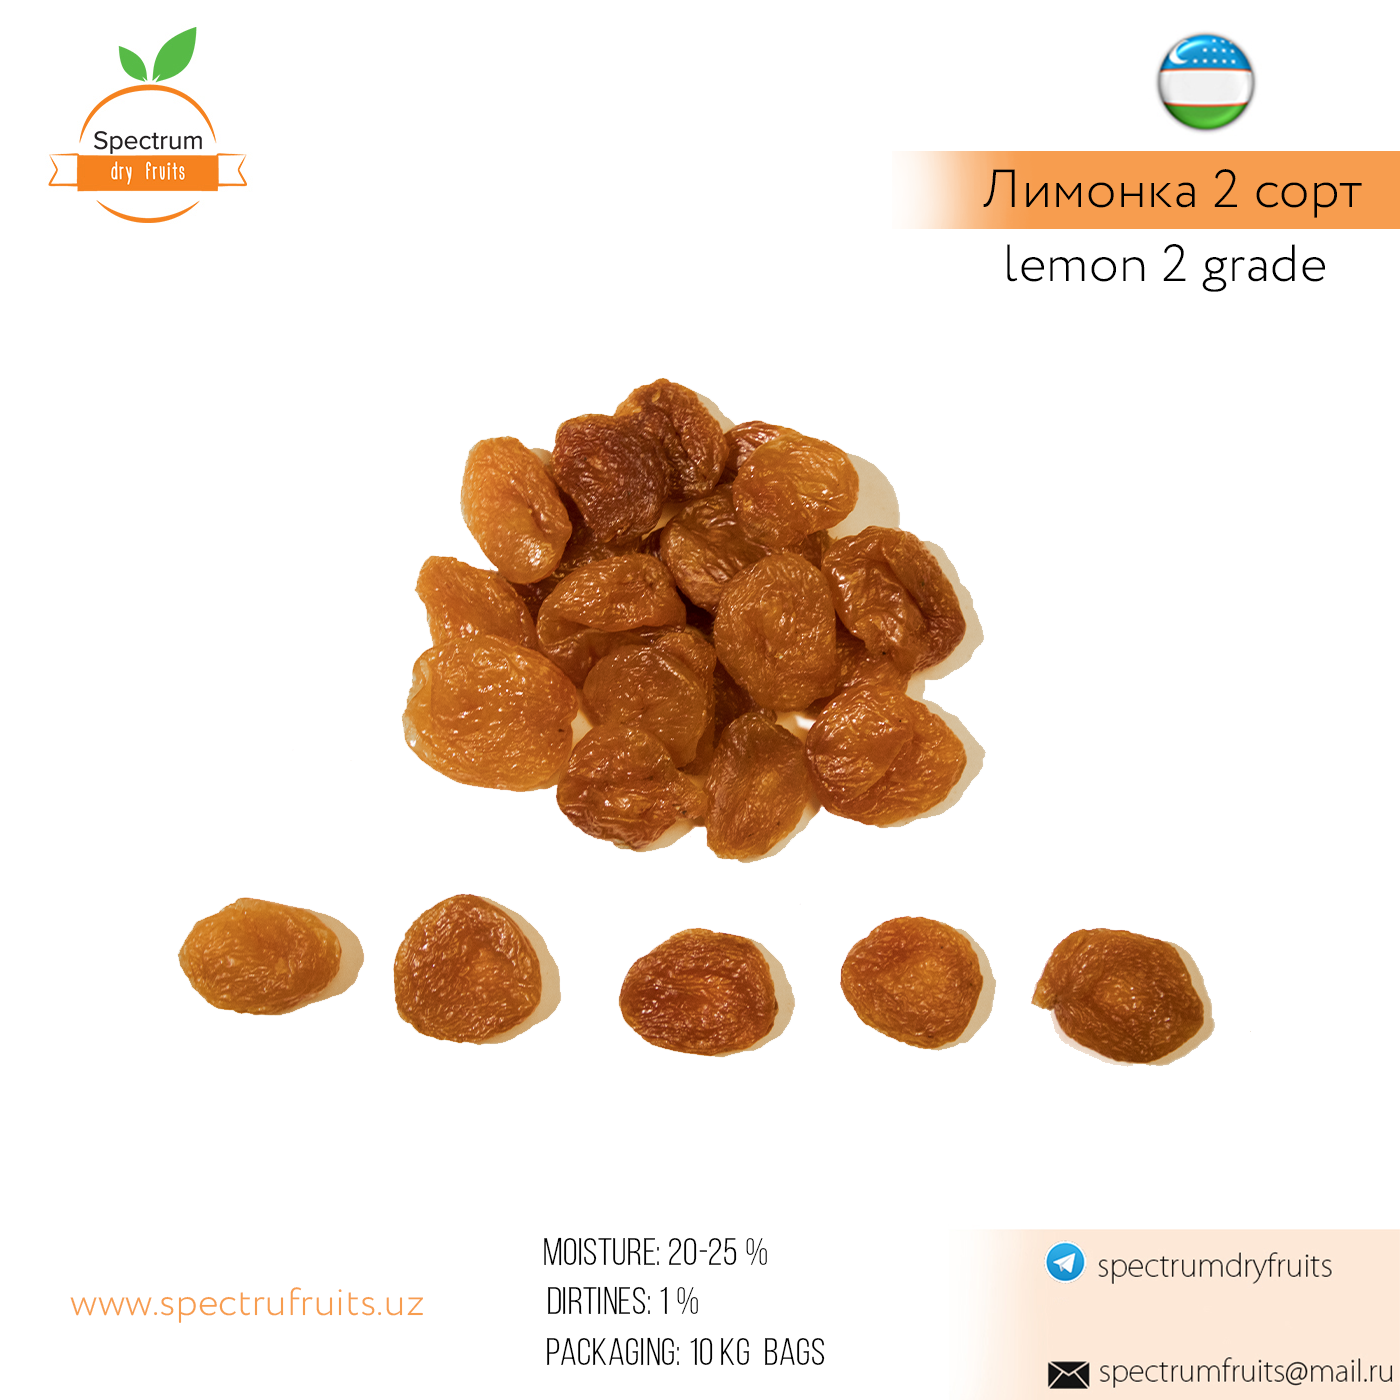 Dried apricots Lemon 2nd grade